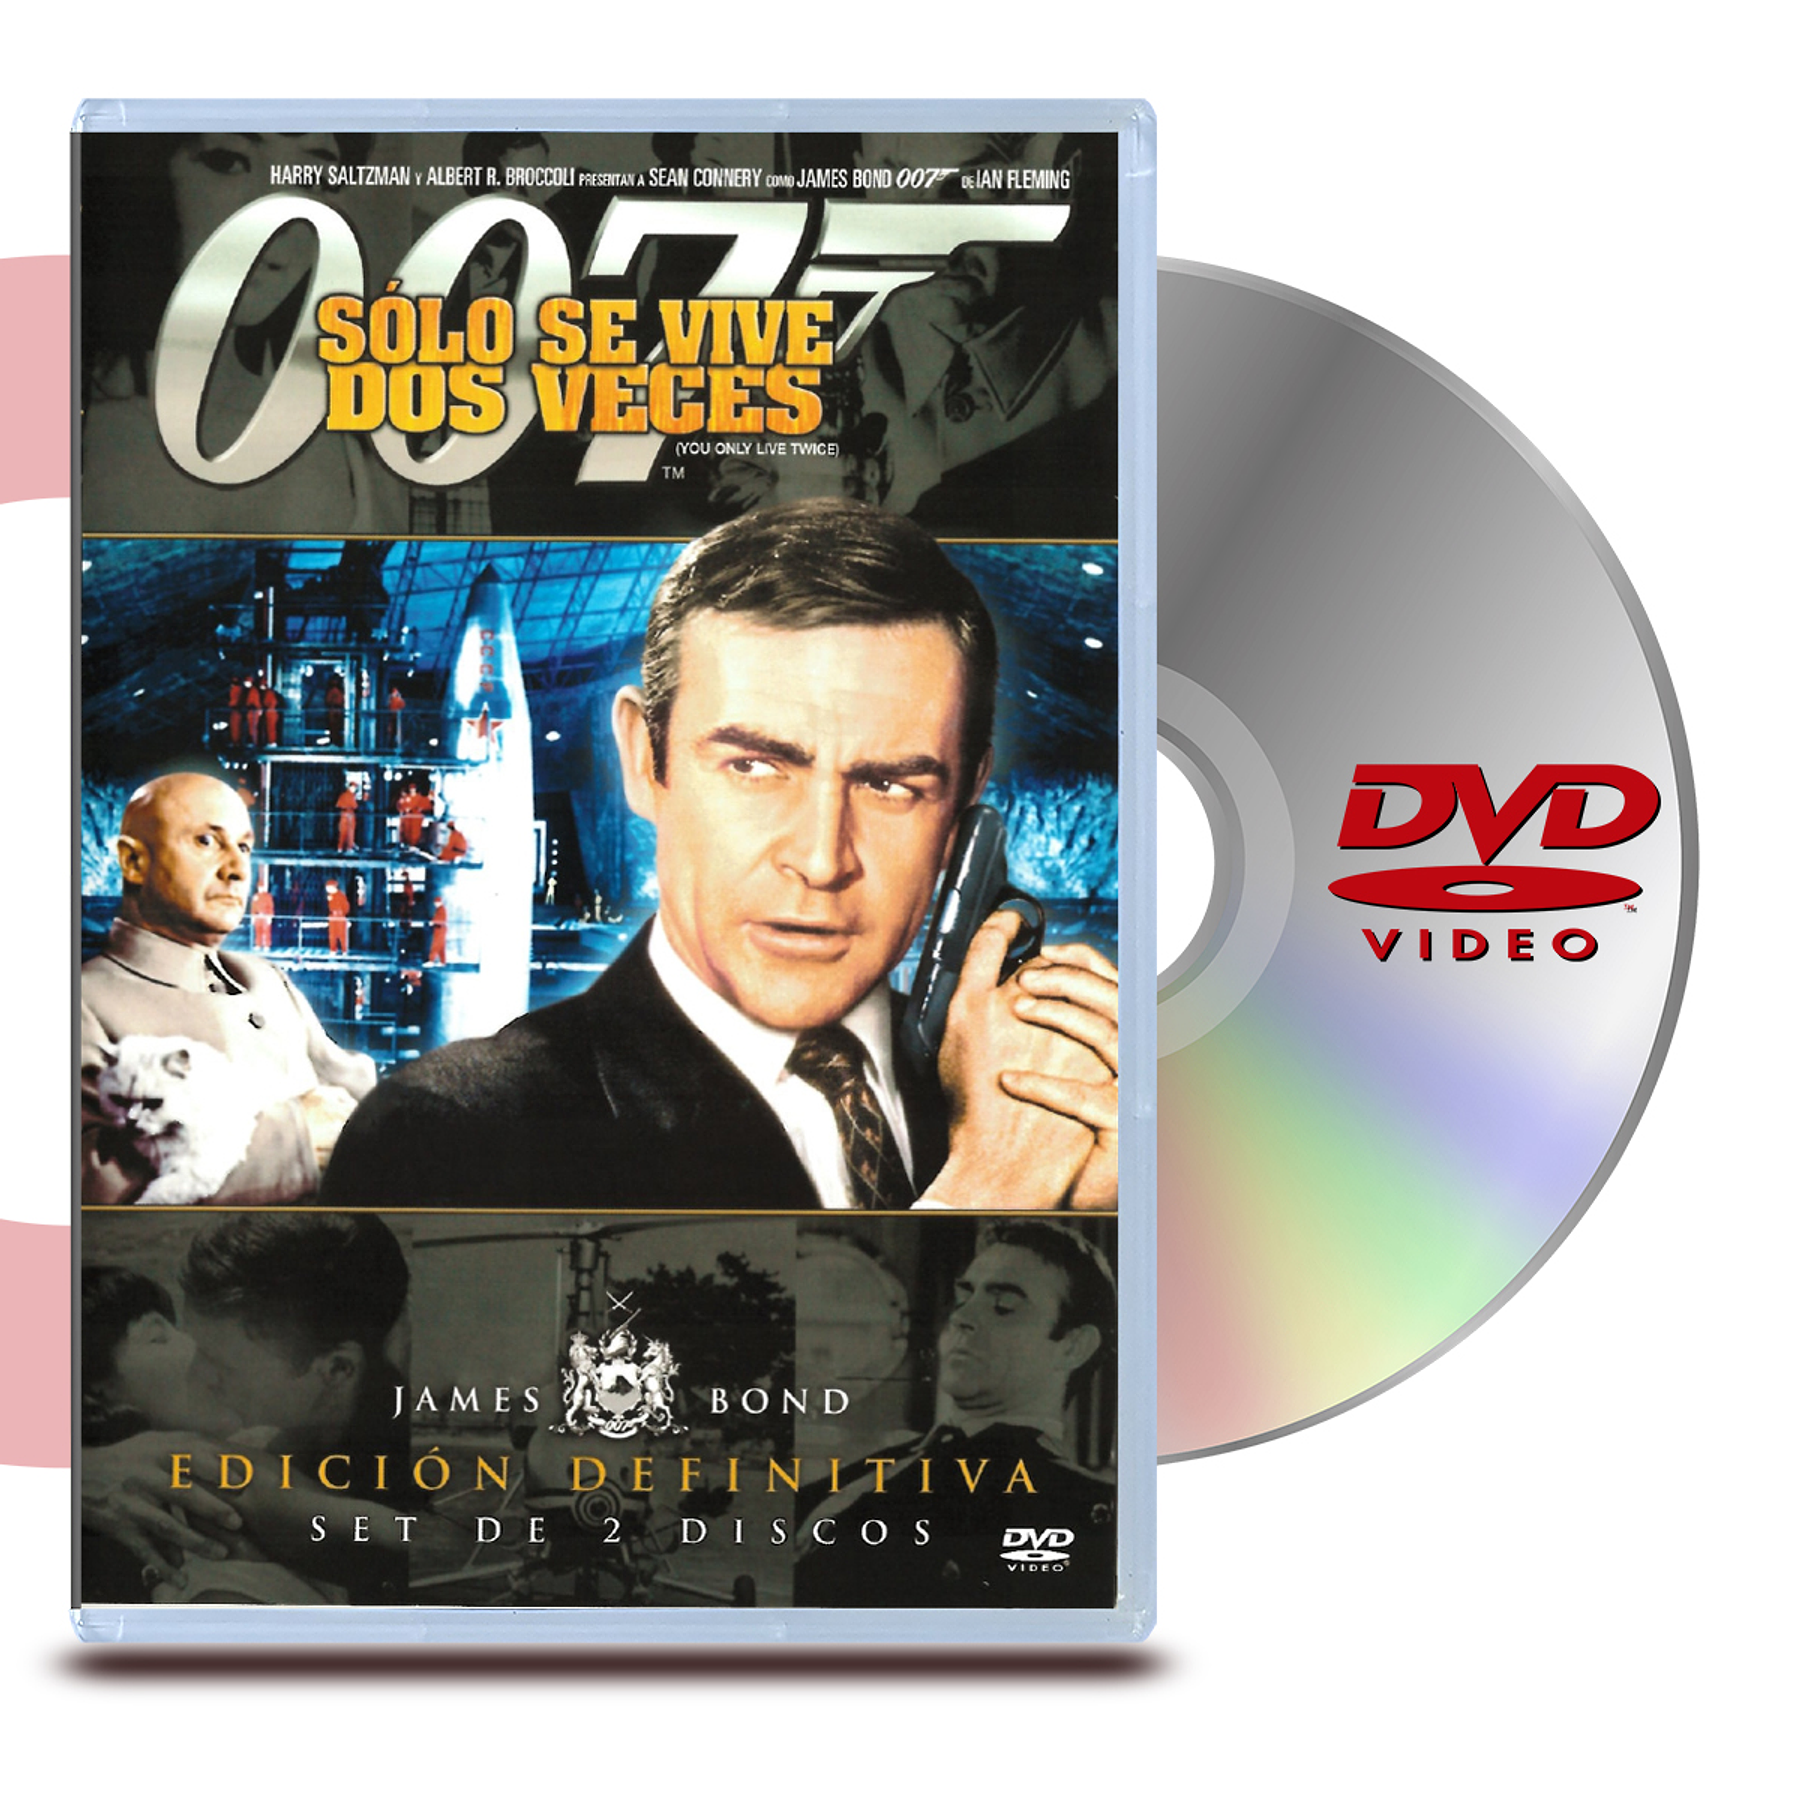 DVD 007 SOLO SE VIVE DOS VECES